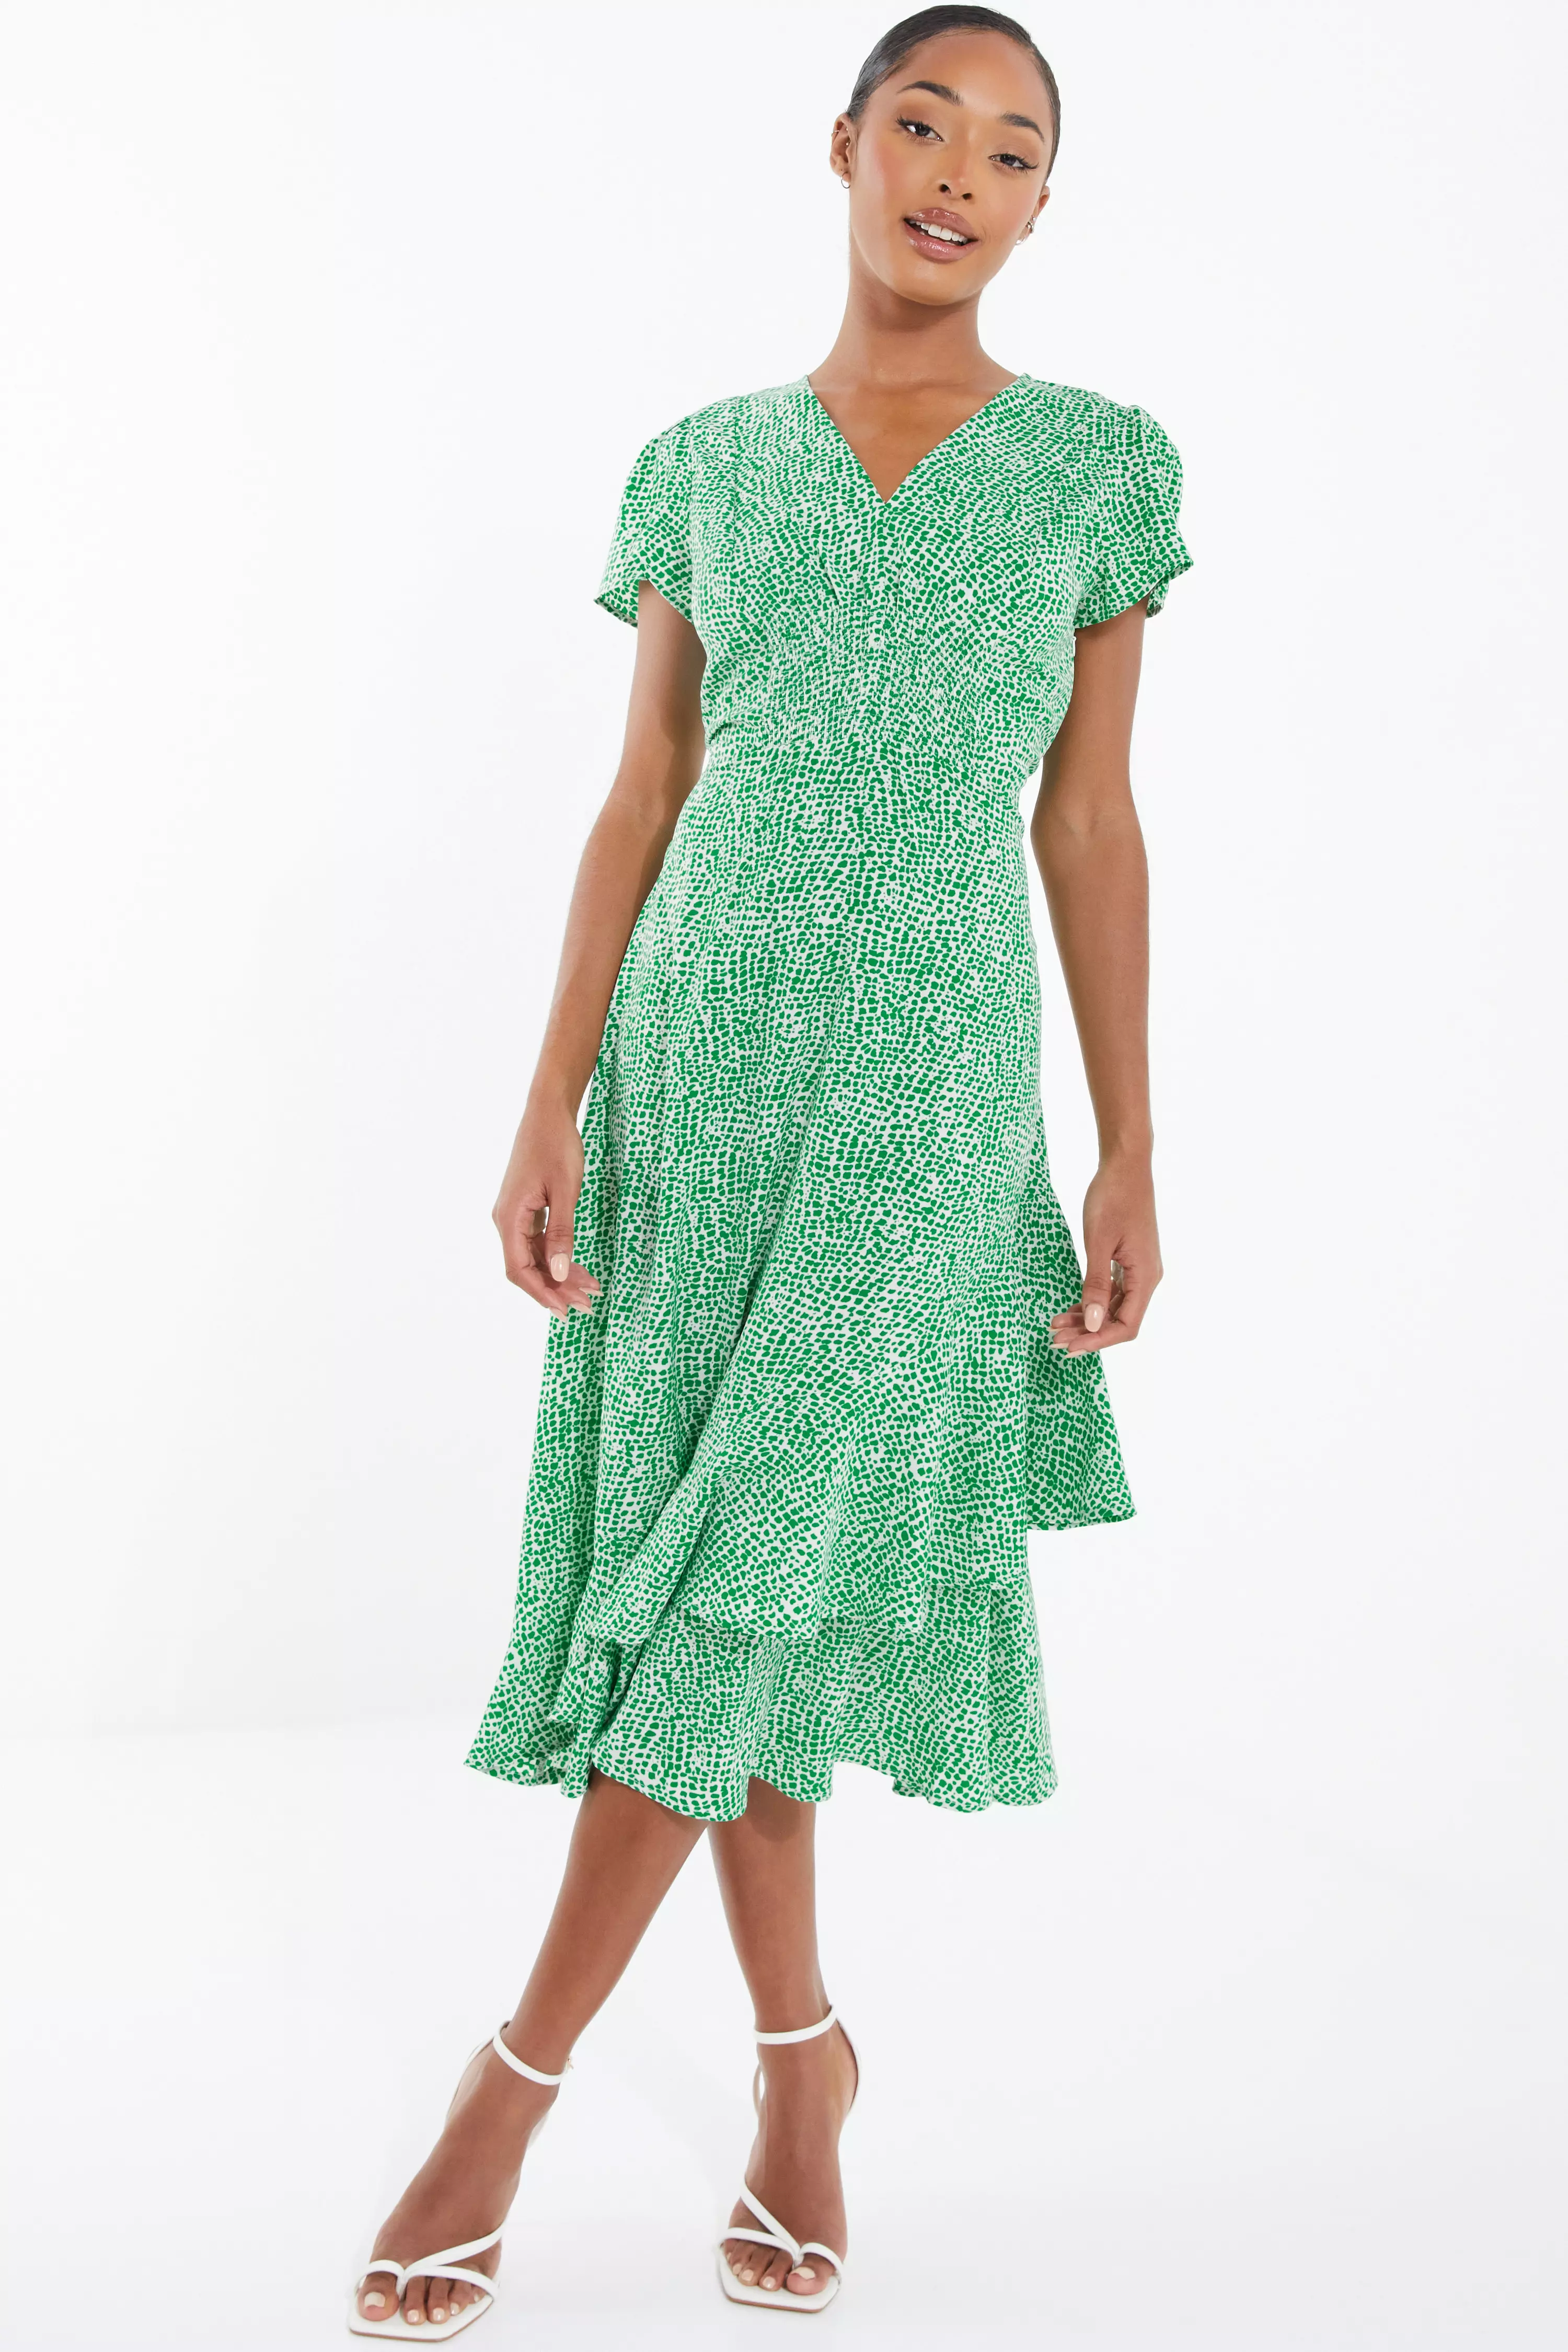 Green Polka Dot Frill Midi Dress - QUIZ Clothing